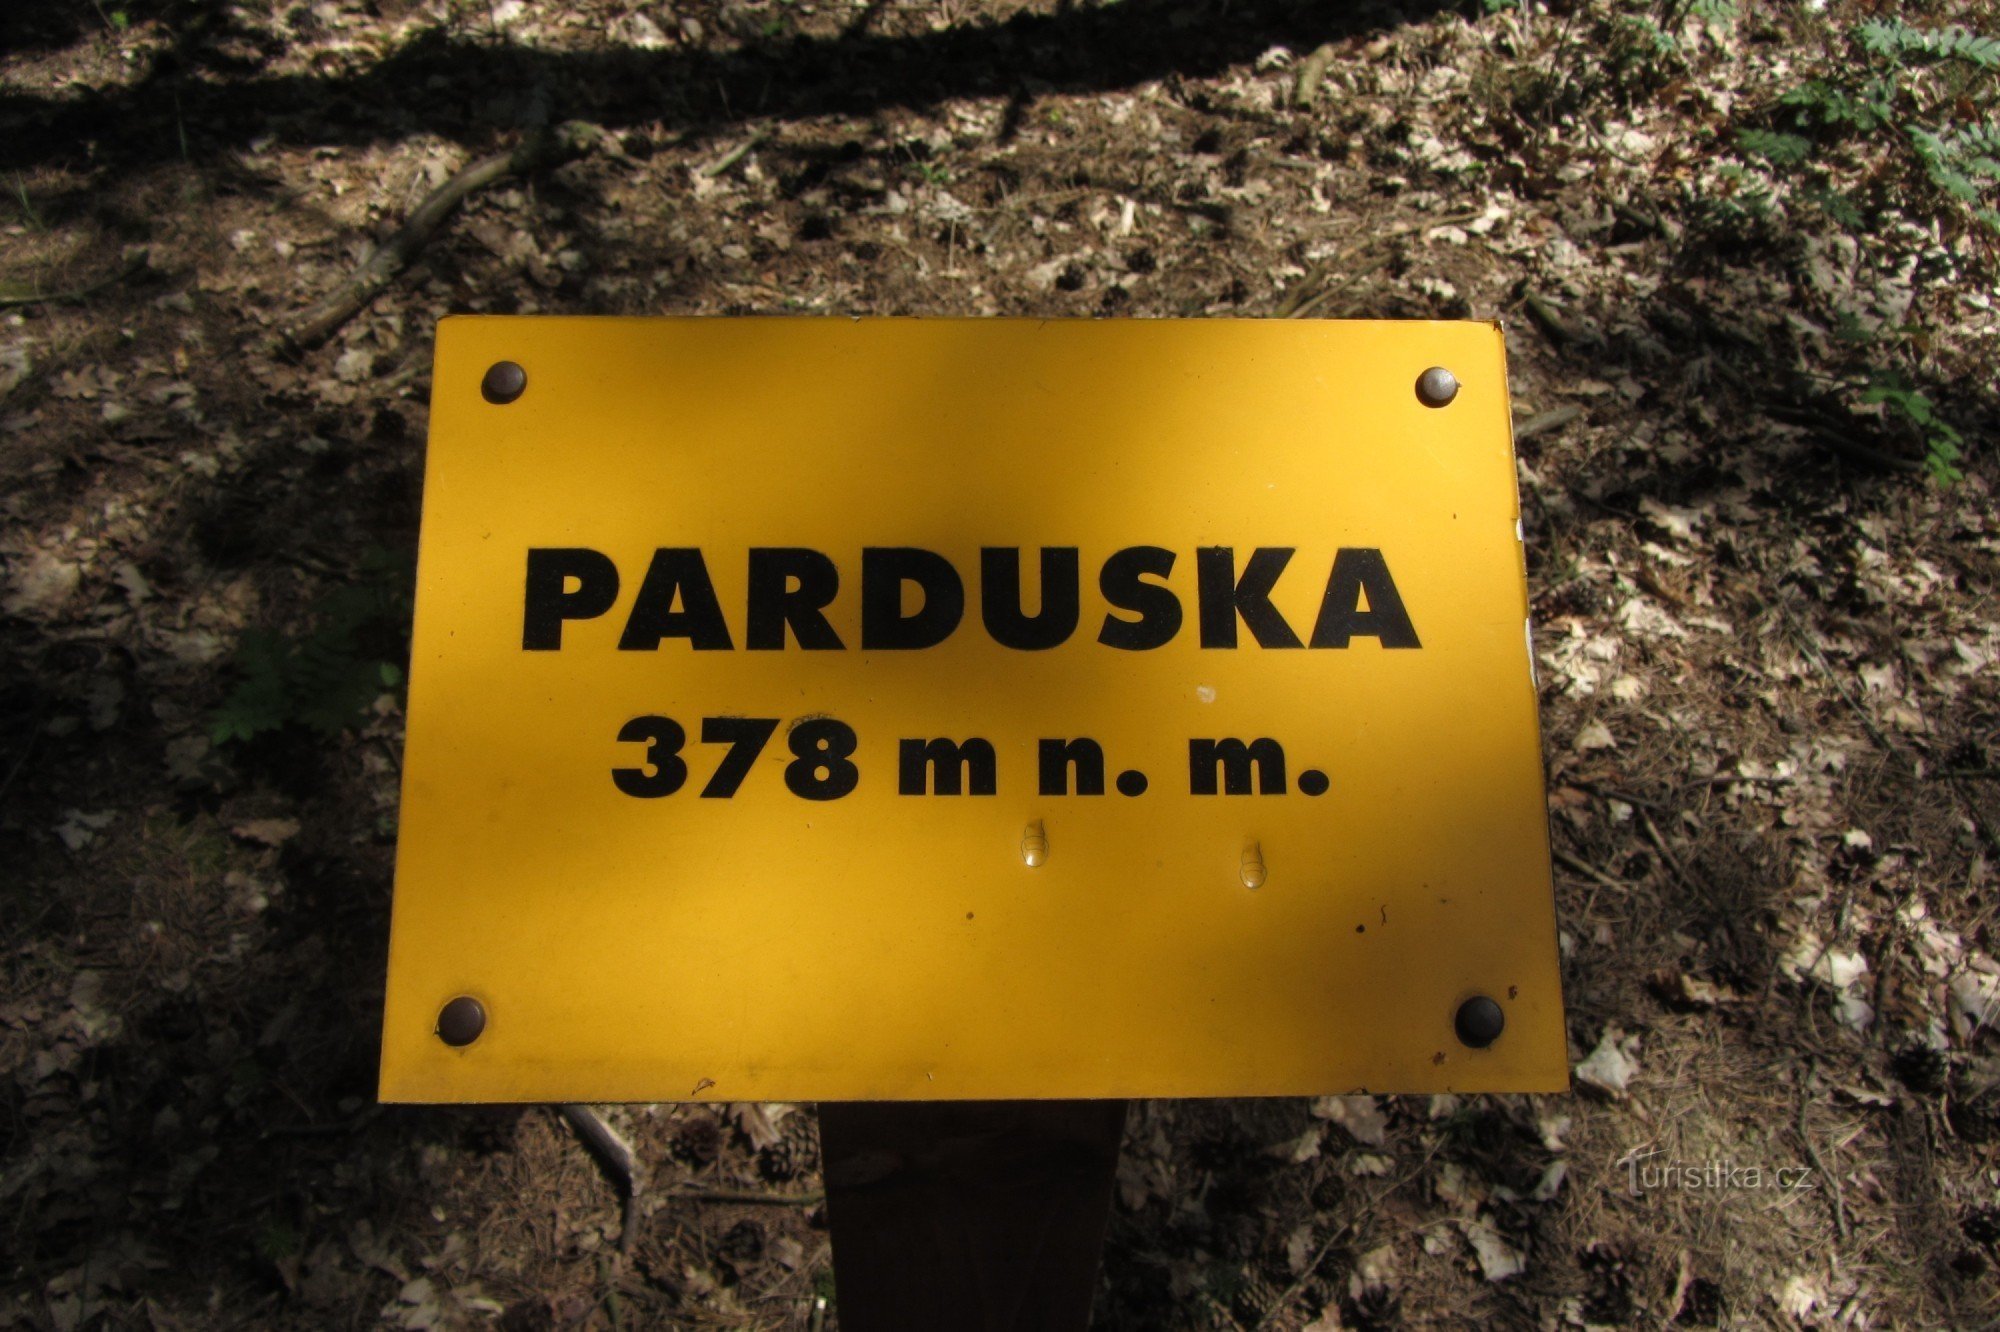 Parduska - pico